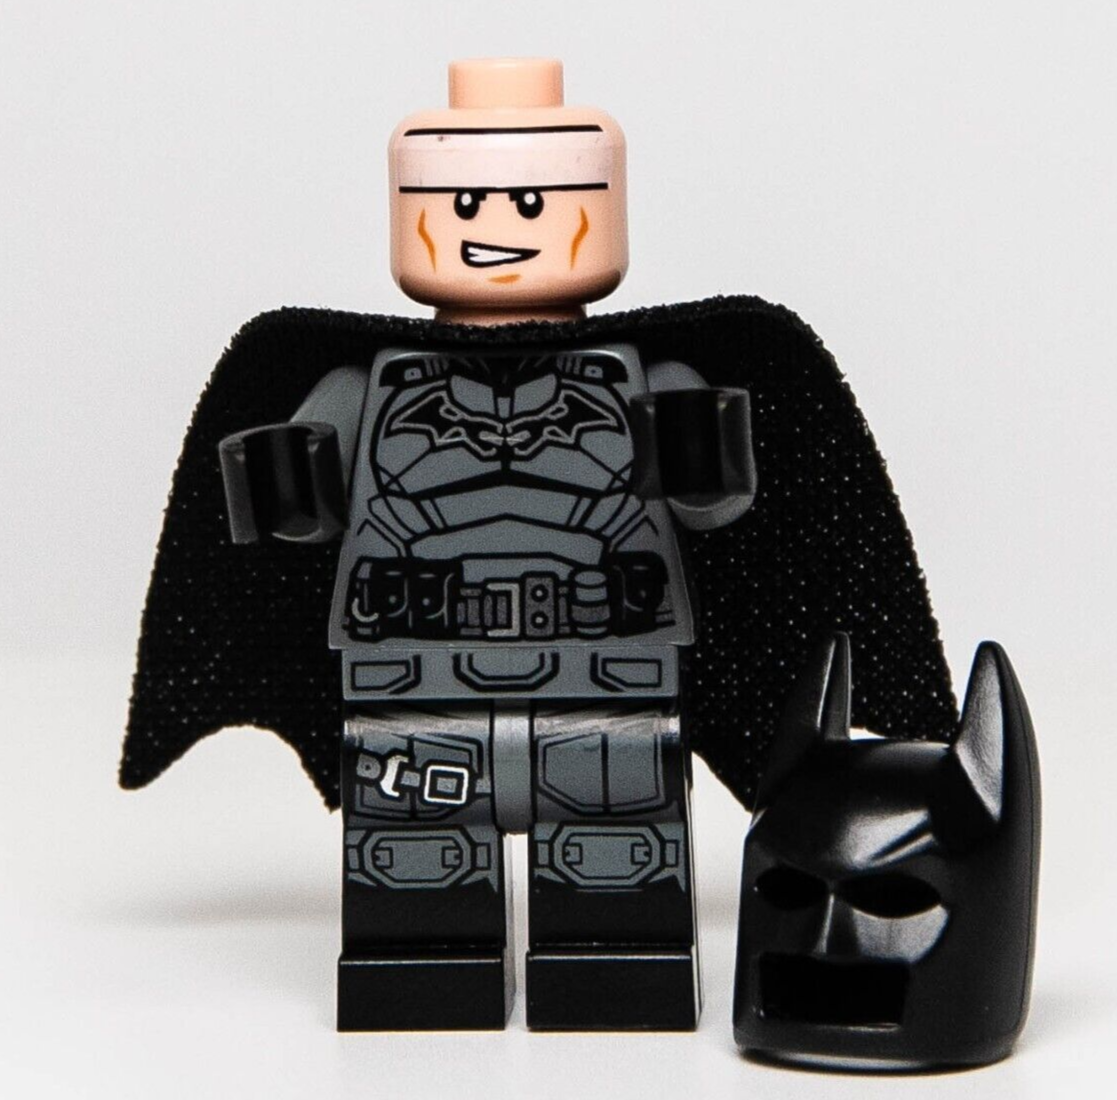 NEW LEGO The BATMAN Minifigure - sh786 - Super Hero 76183 Batcave 76181